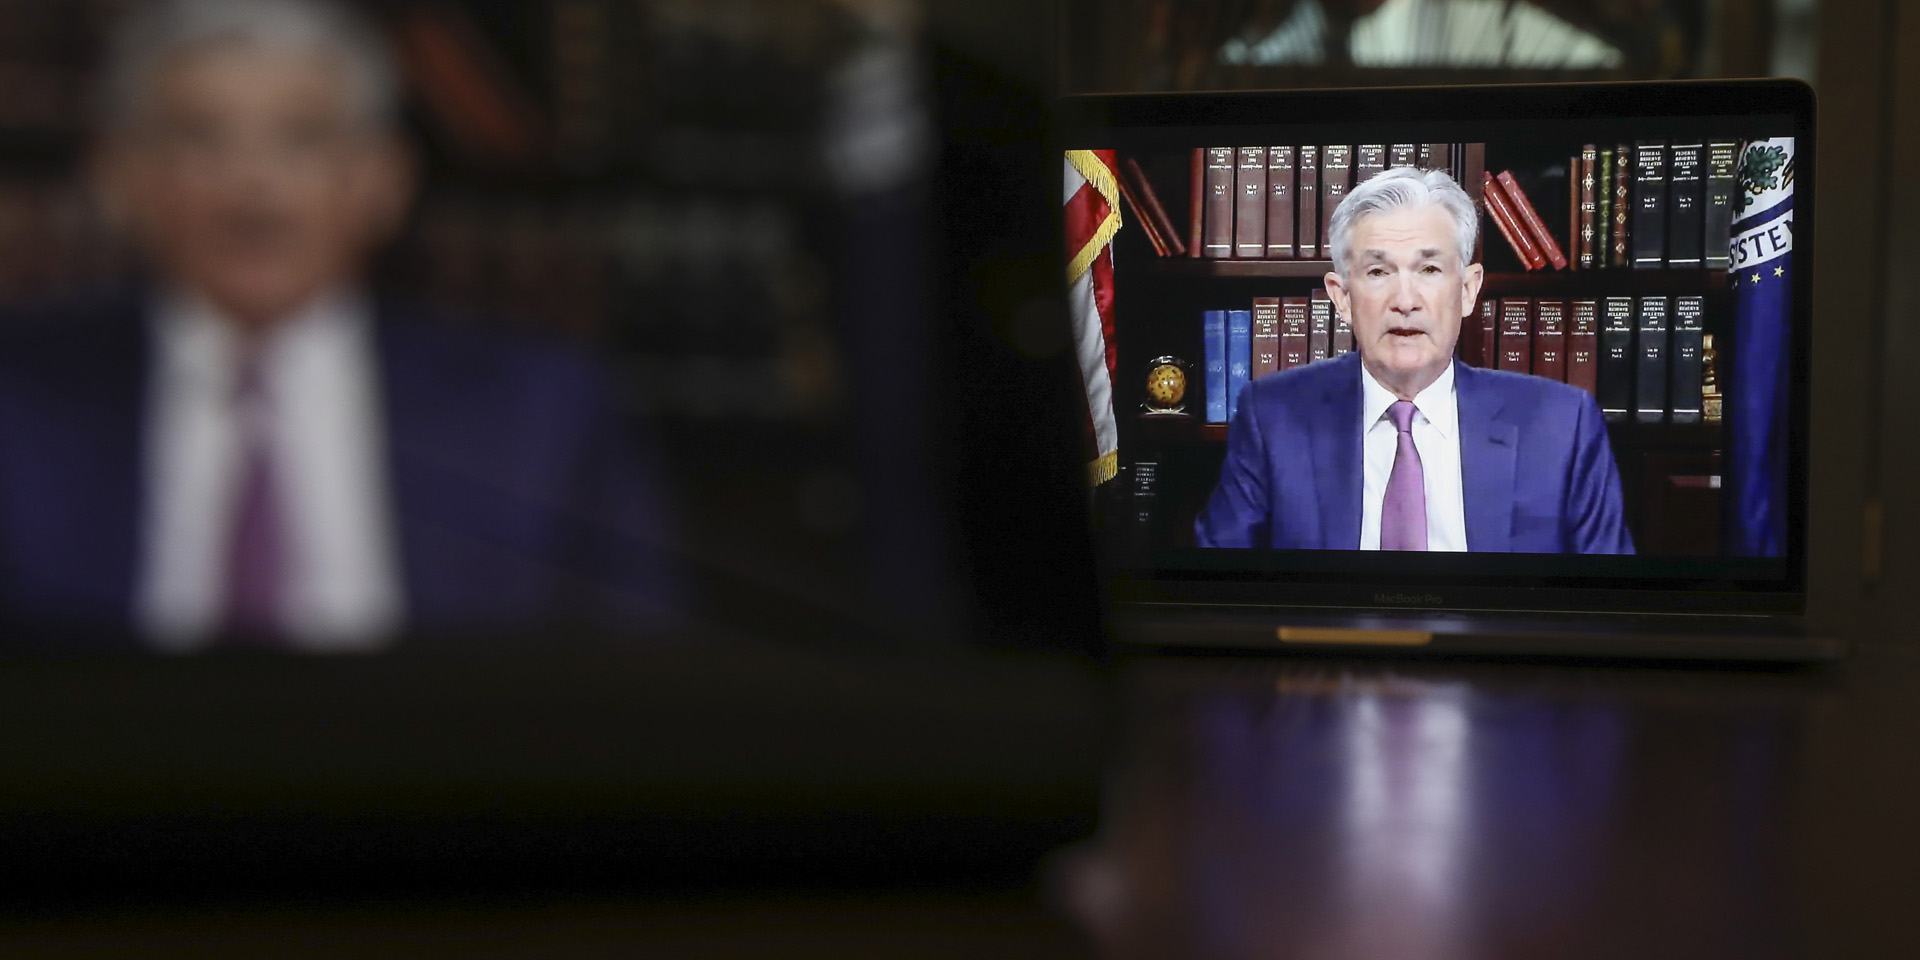 Jackson Hole : La Fed bien déterminée à juguler l’inflation